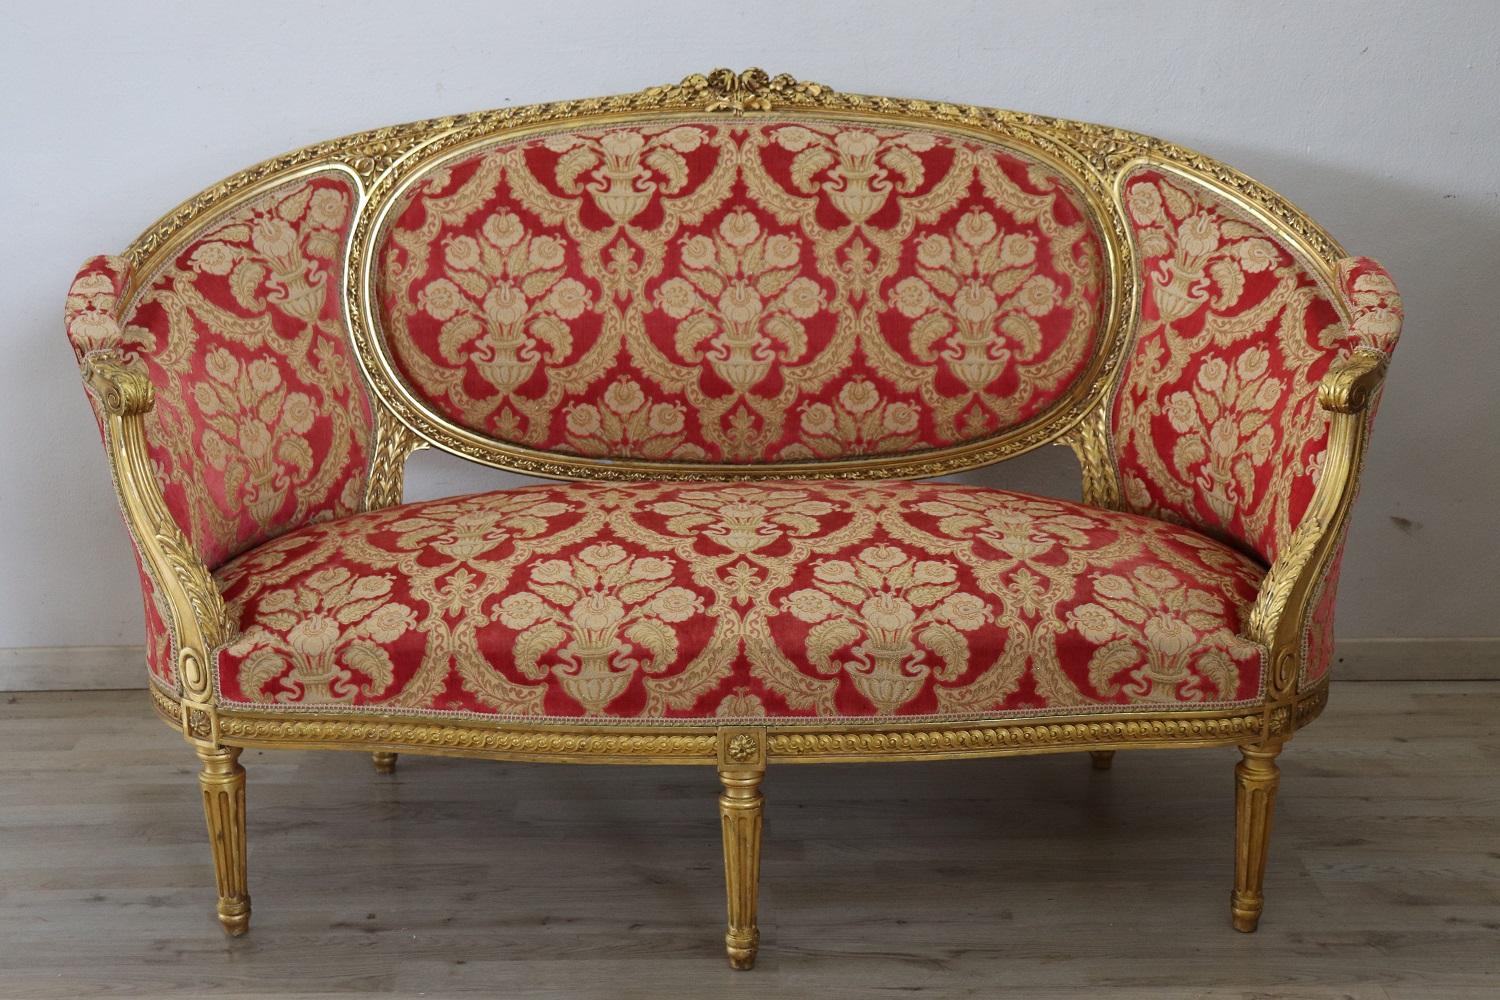 Rare ensemble complet de salon de luxe italien de style Louis XVI des années 1930, comprenant :
1 grand canapé
4 fauteuils

Ensemble de salon raffiné en bois sculpté et doré. Le salon provient d'une importante villa italienne et embellit la